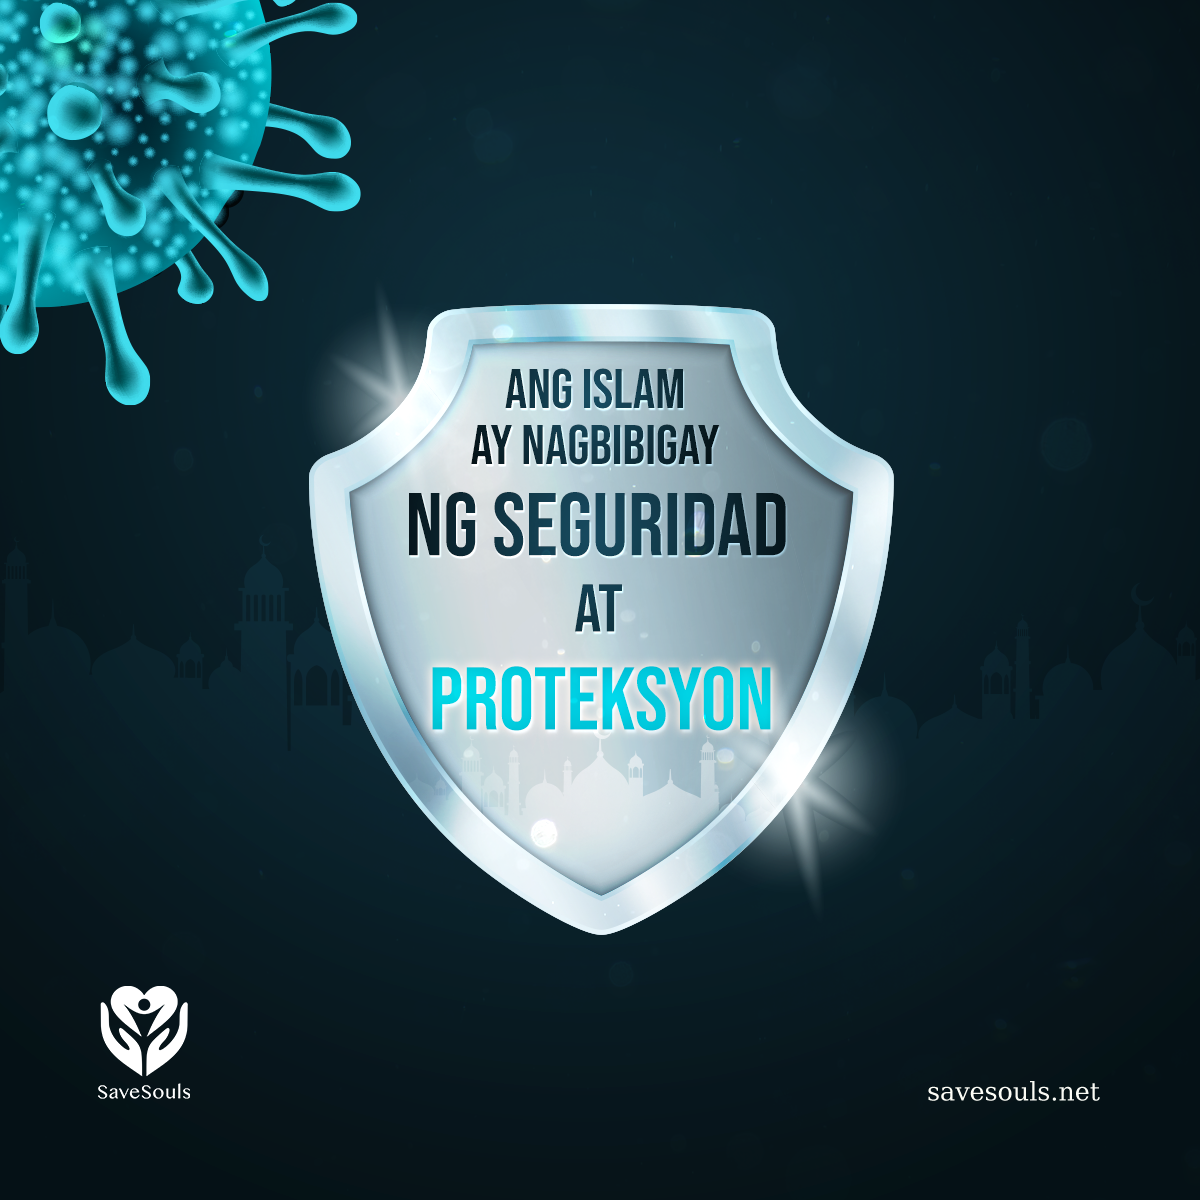 Ang Islam ay nagbibigay ng seguridad at proteksyon